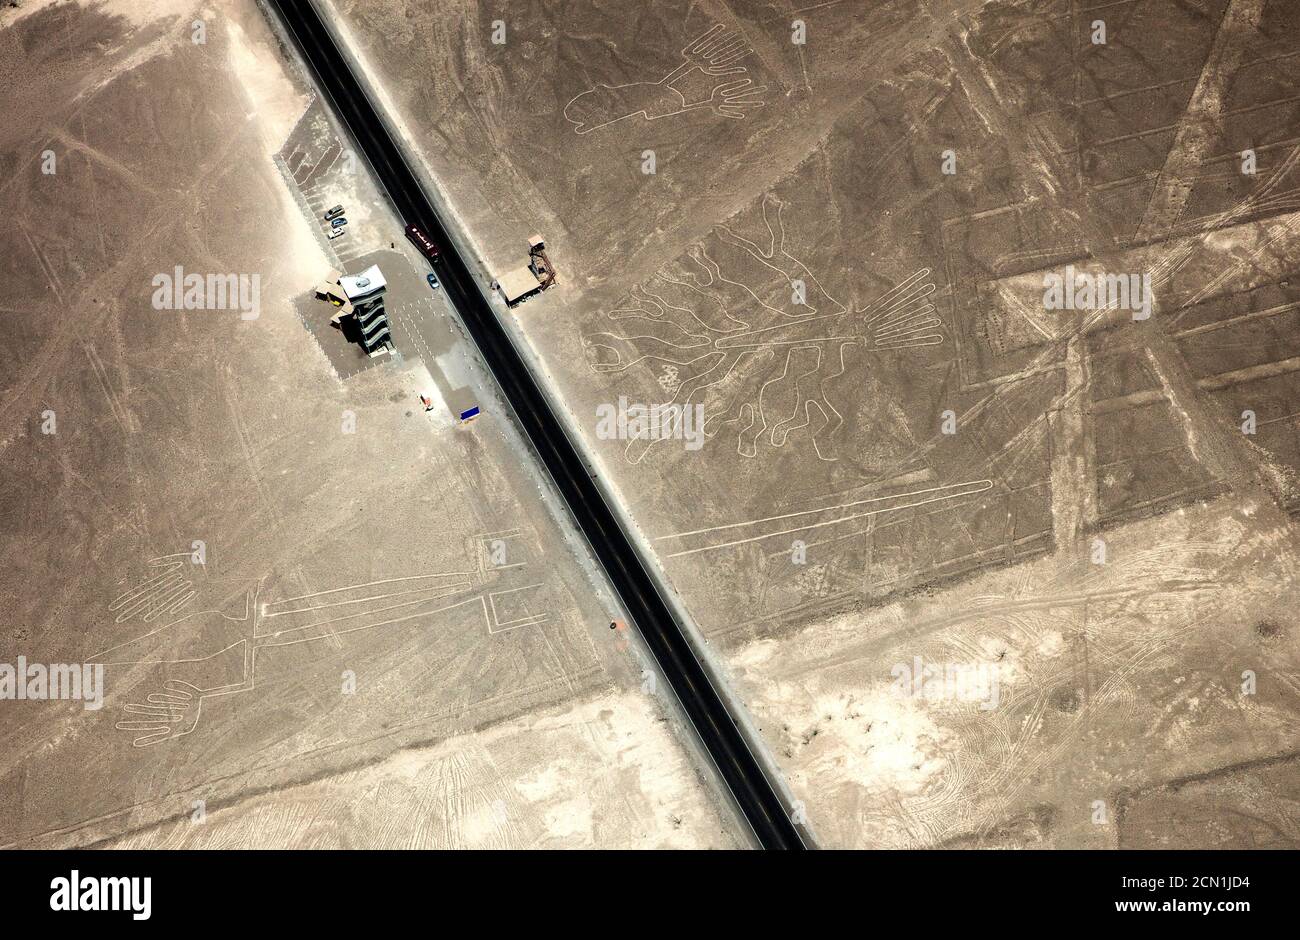 Die panamerikanische oder interamerikanische Autobahn durchschneidet die Nazca-Linien In der Wüste des südlichen Peru Stockfoto